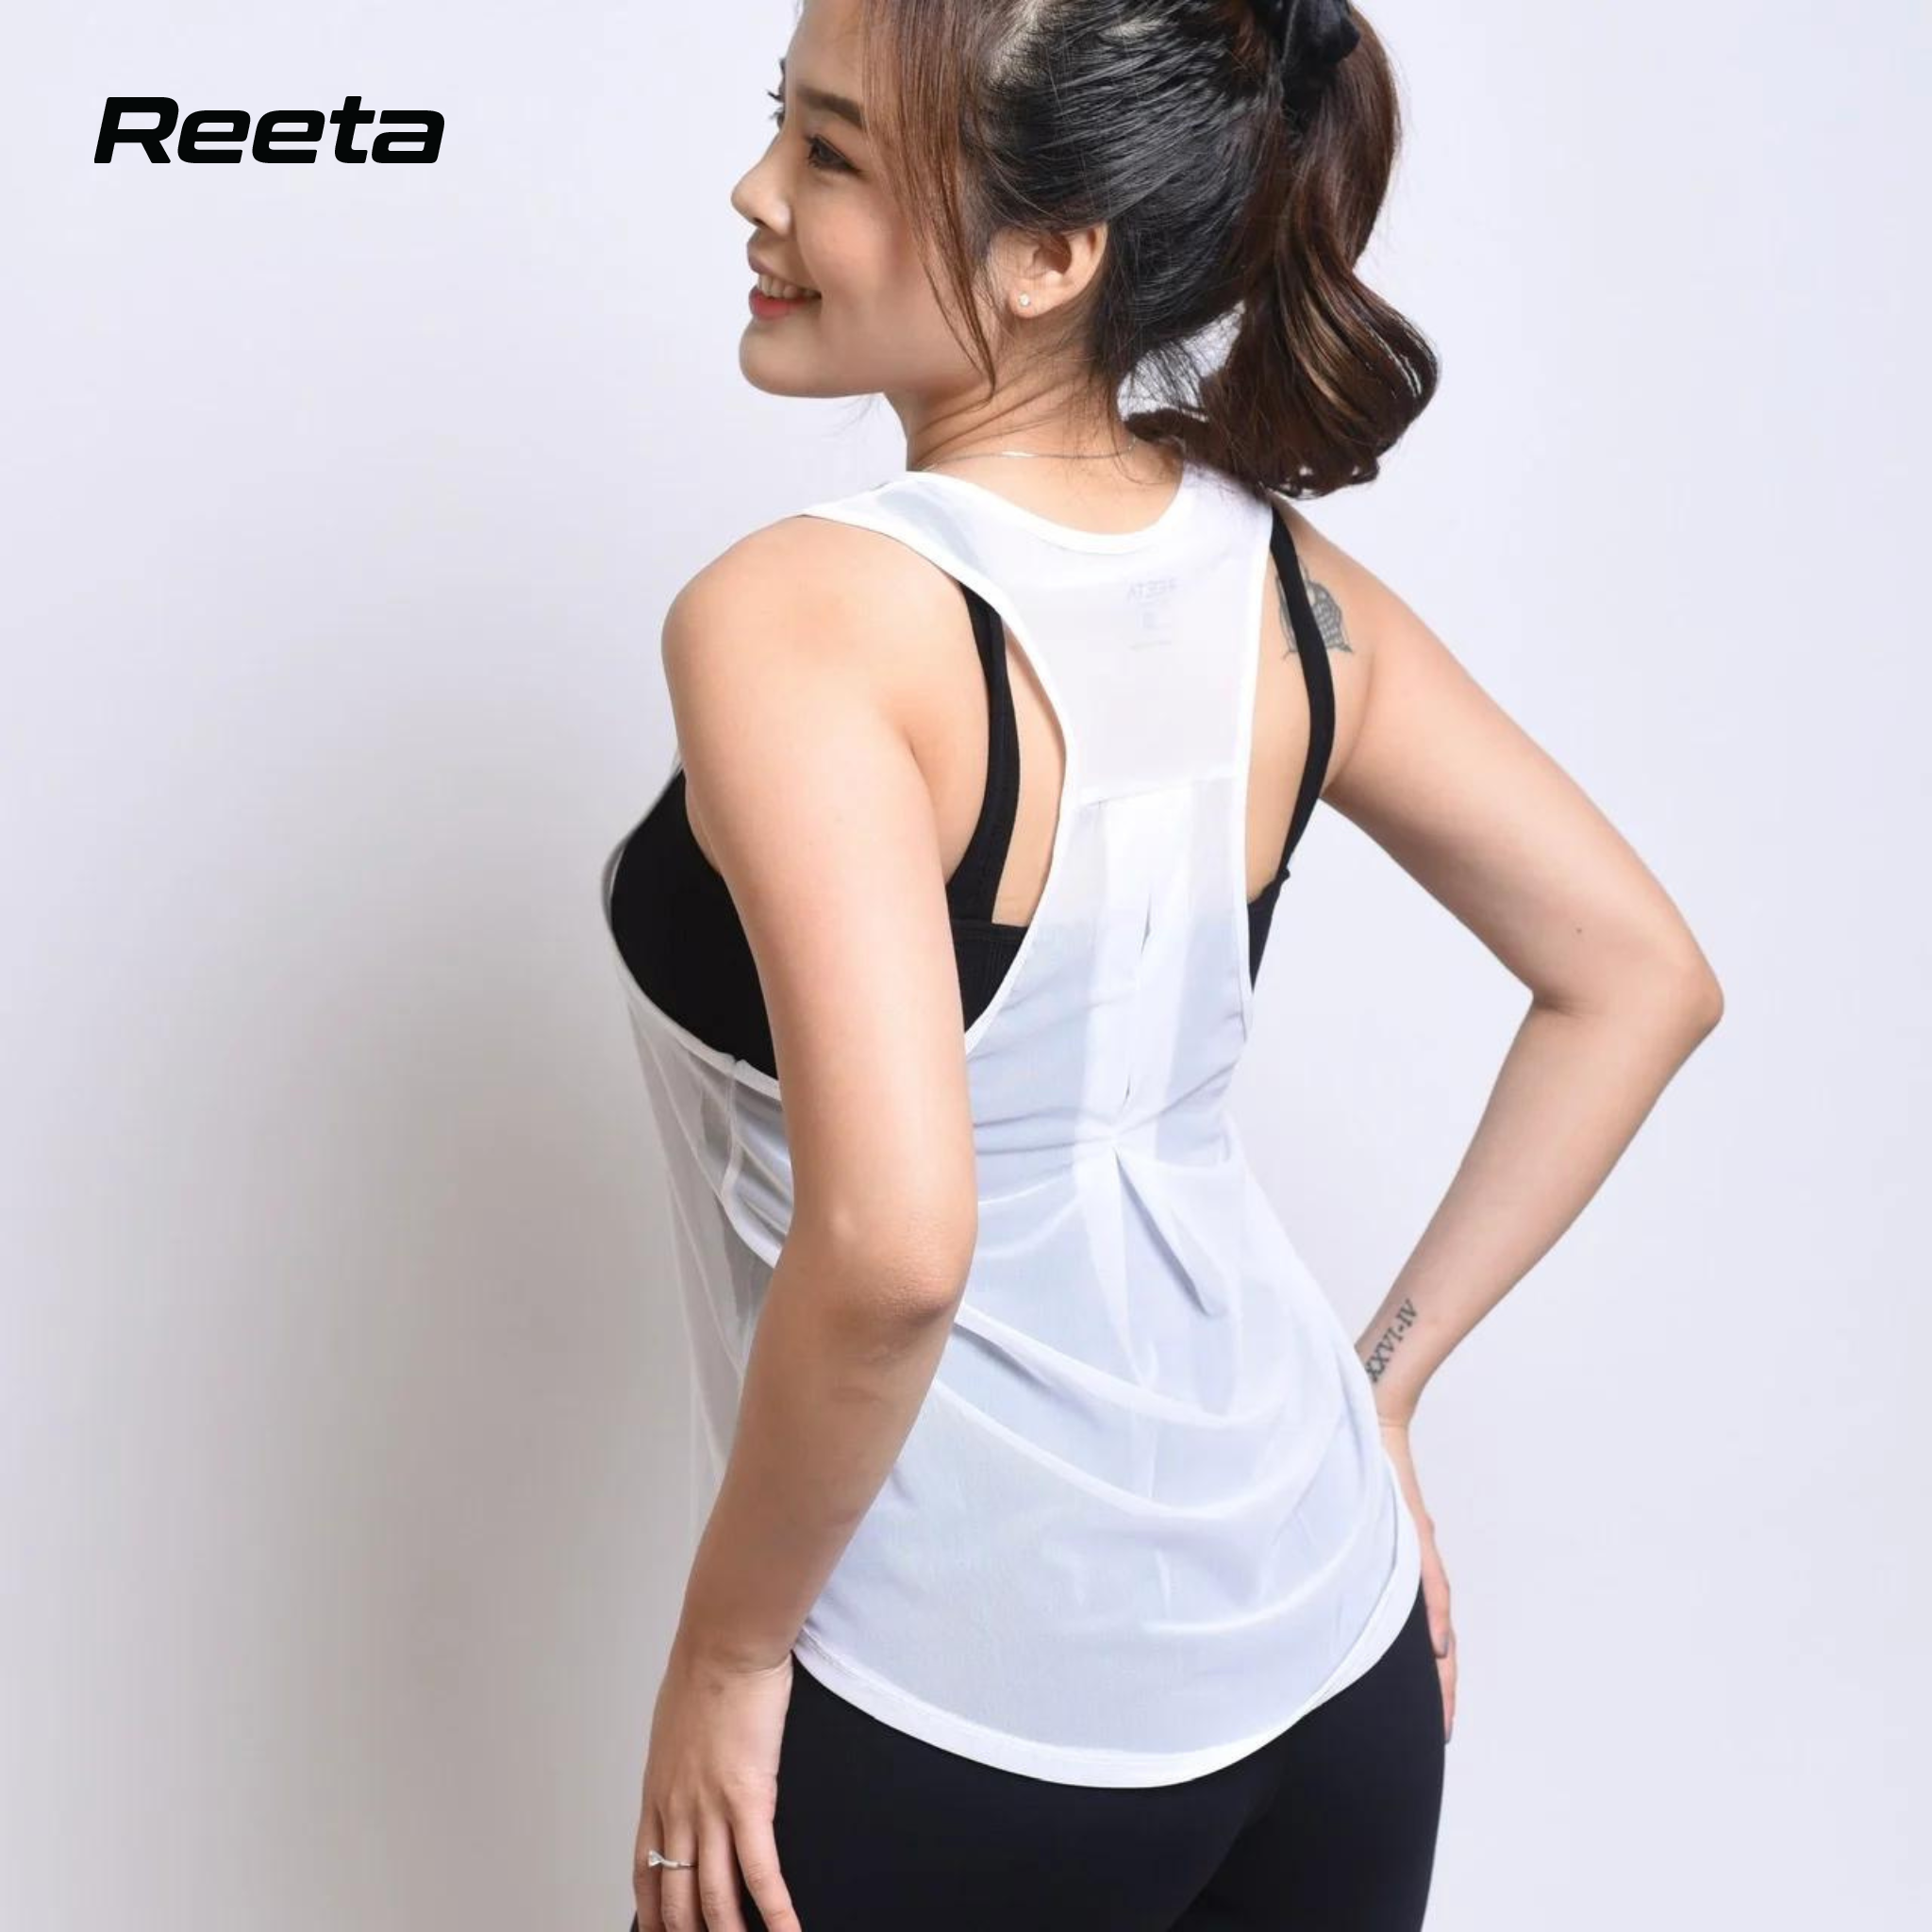 Áo Tanktop nữ REETA thoải mái tập Gym, Yoga với chất vải thun lưới đa dạng màu sắc - A1697